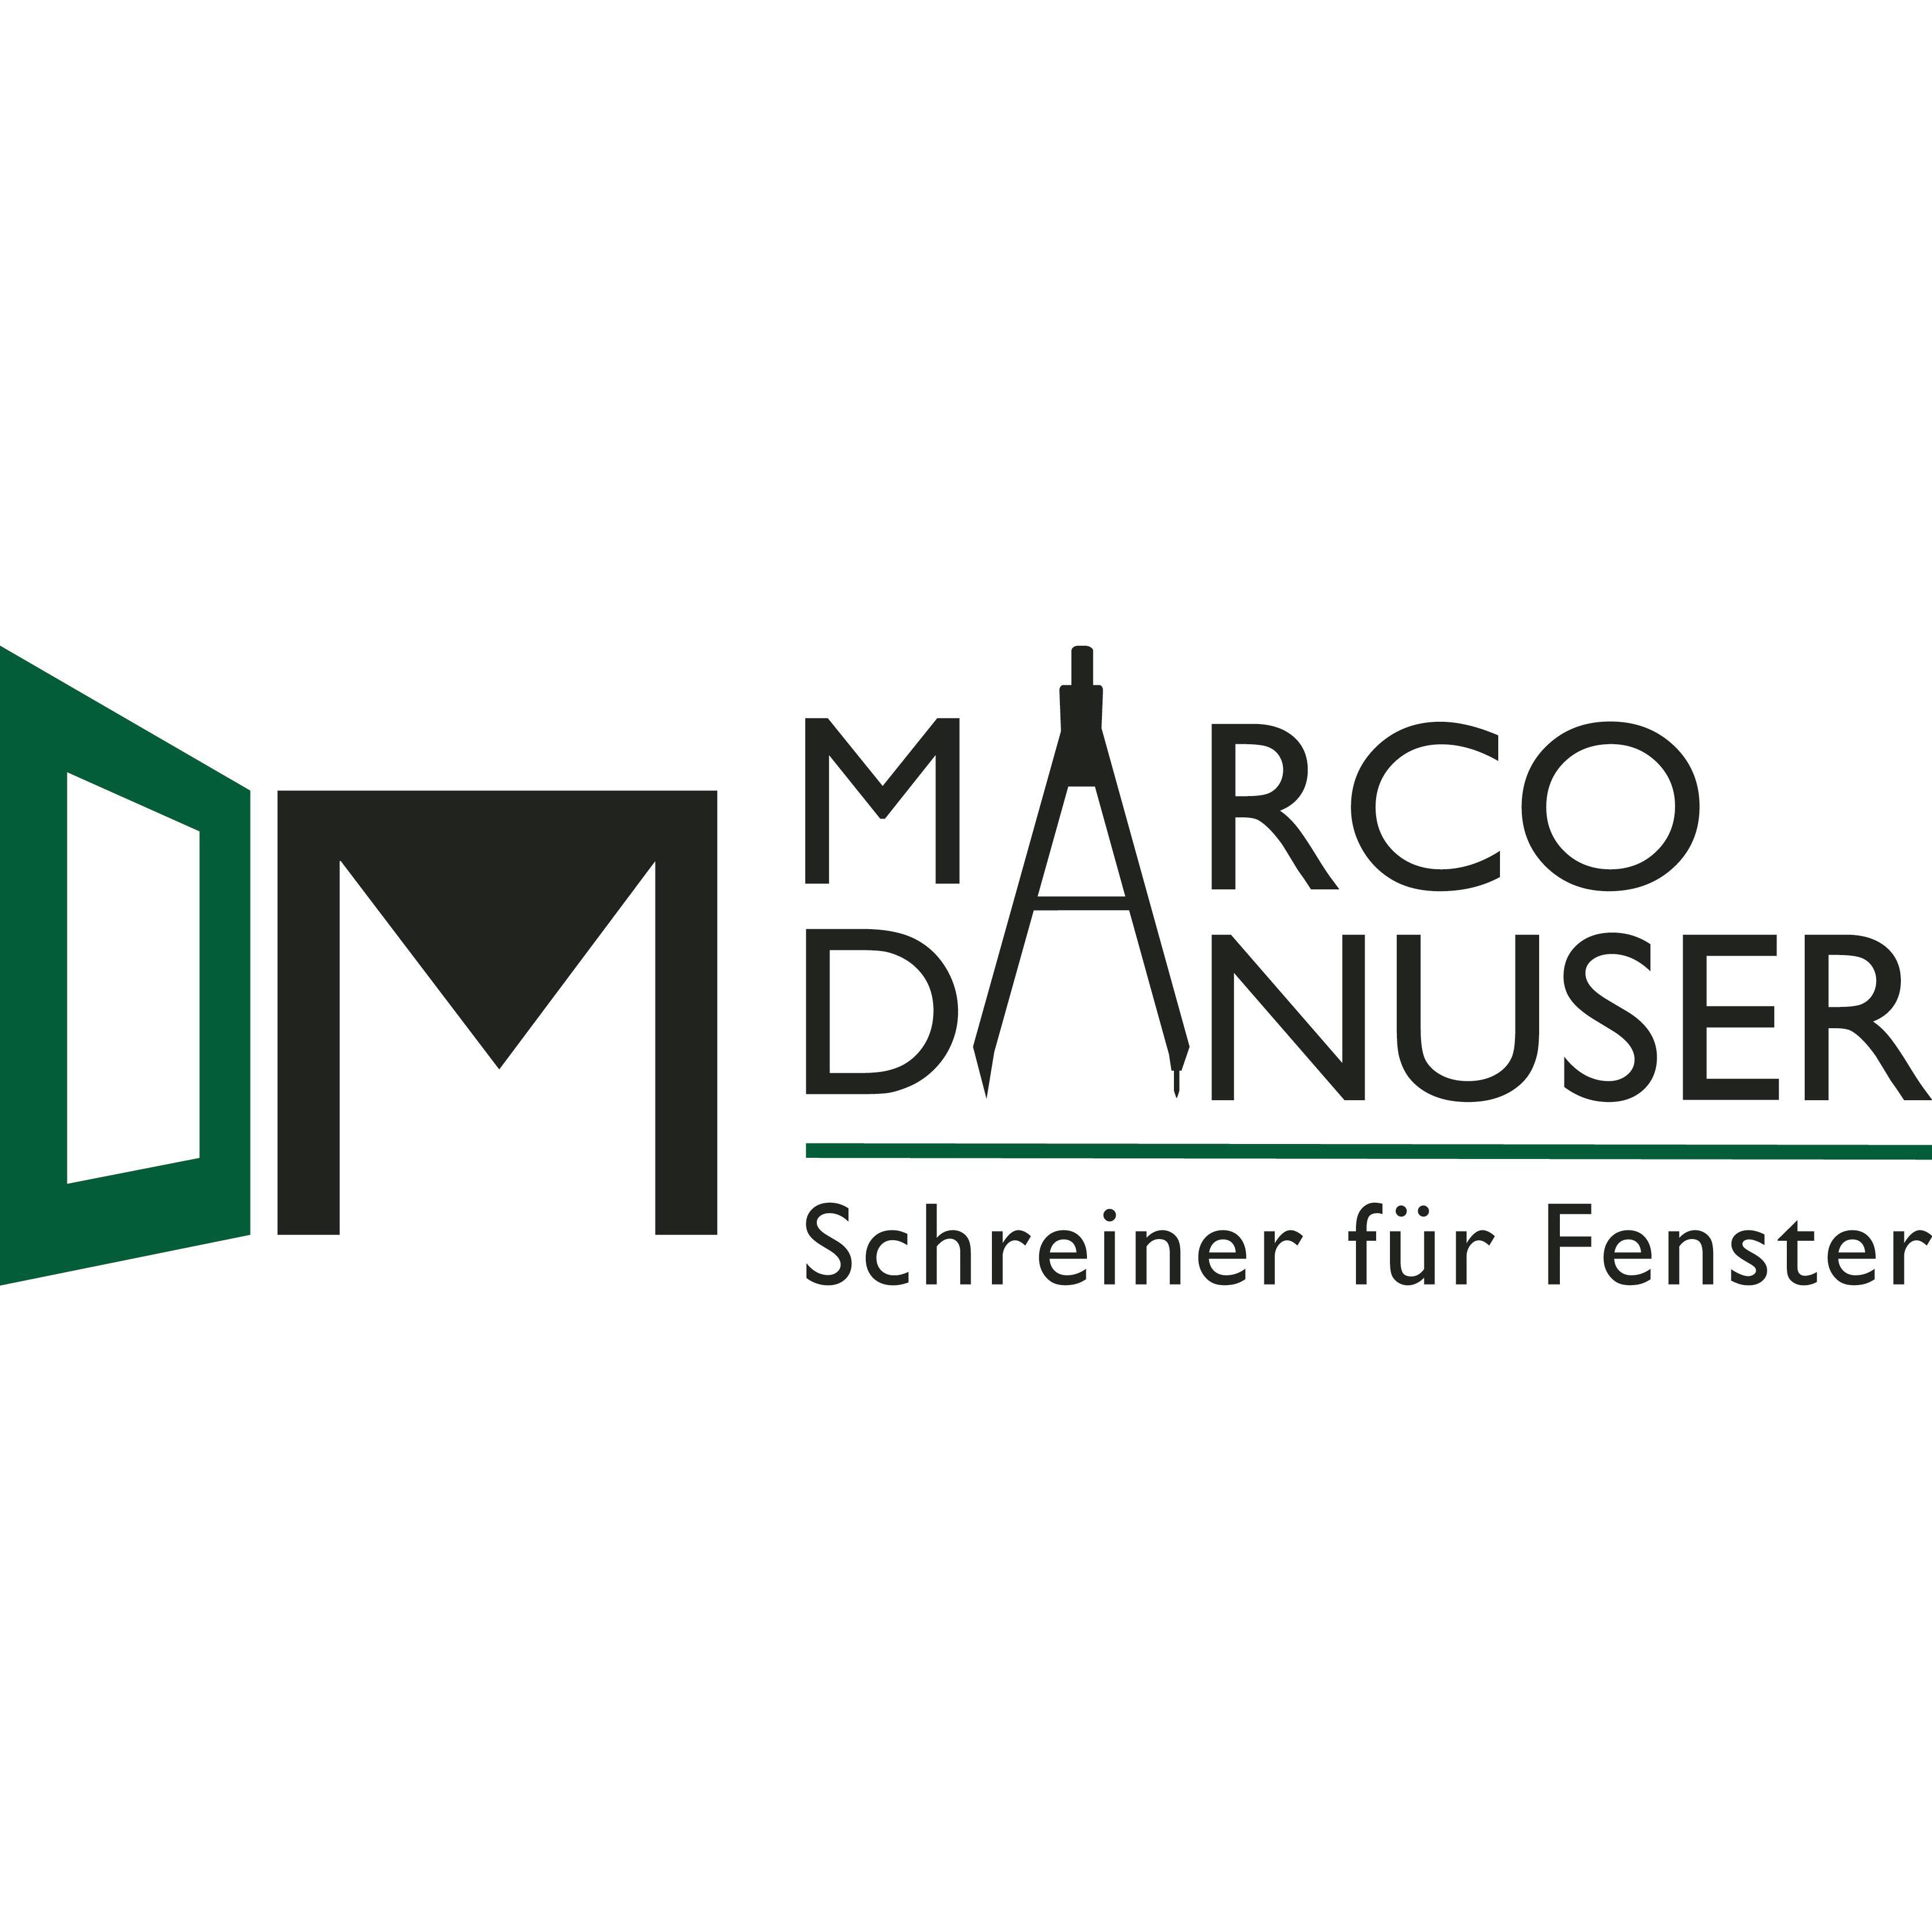 Schreinerei Marco Danuser, Fenster und Türen Logo